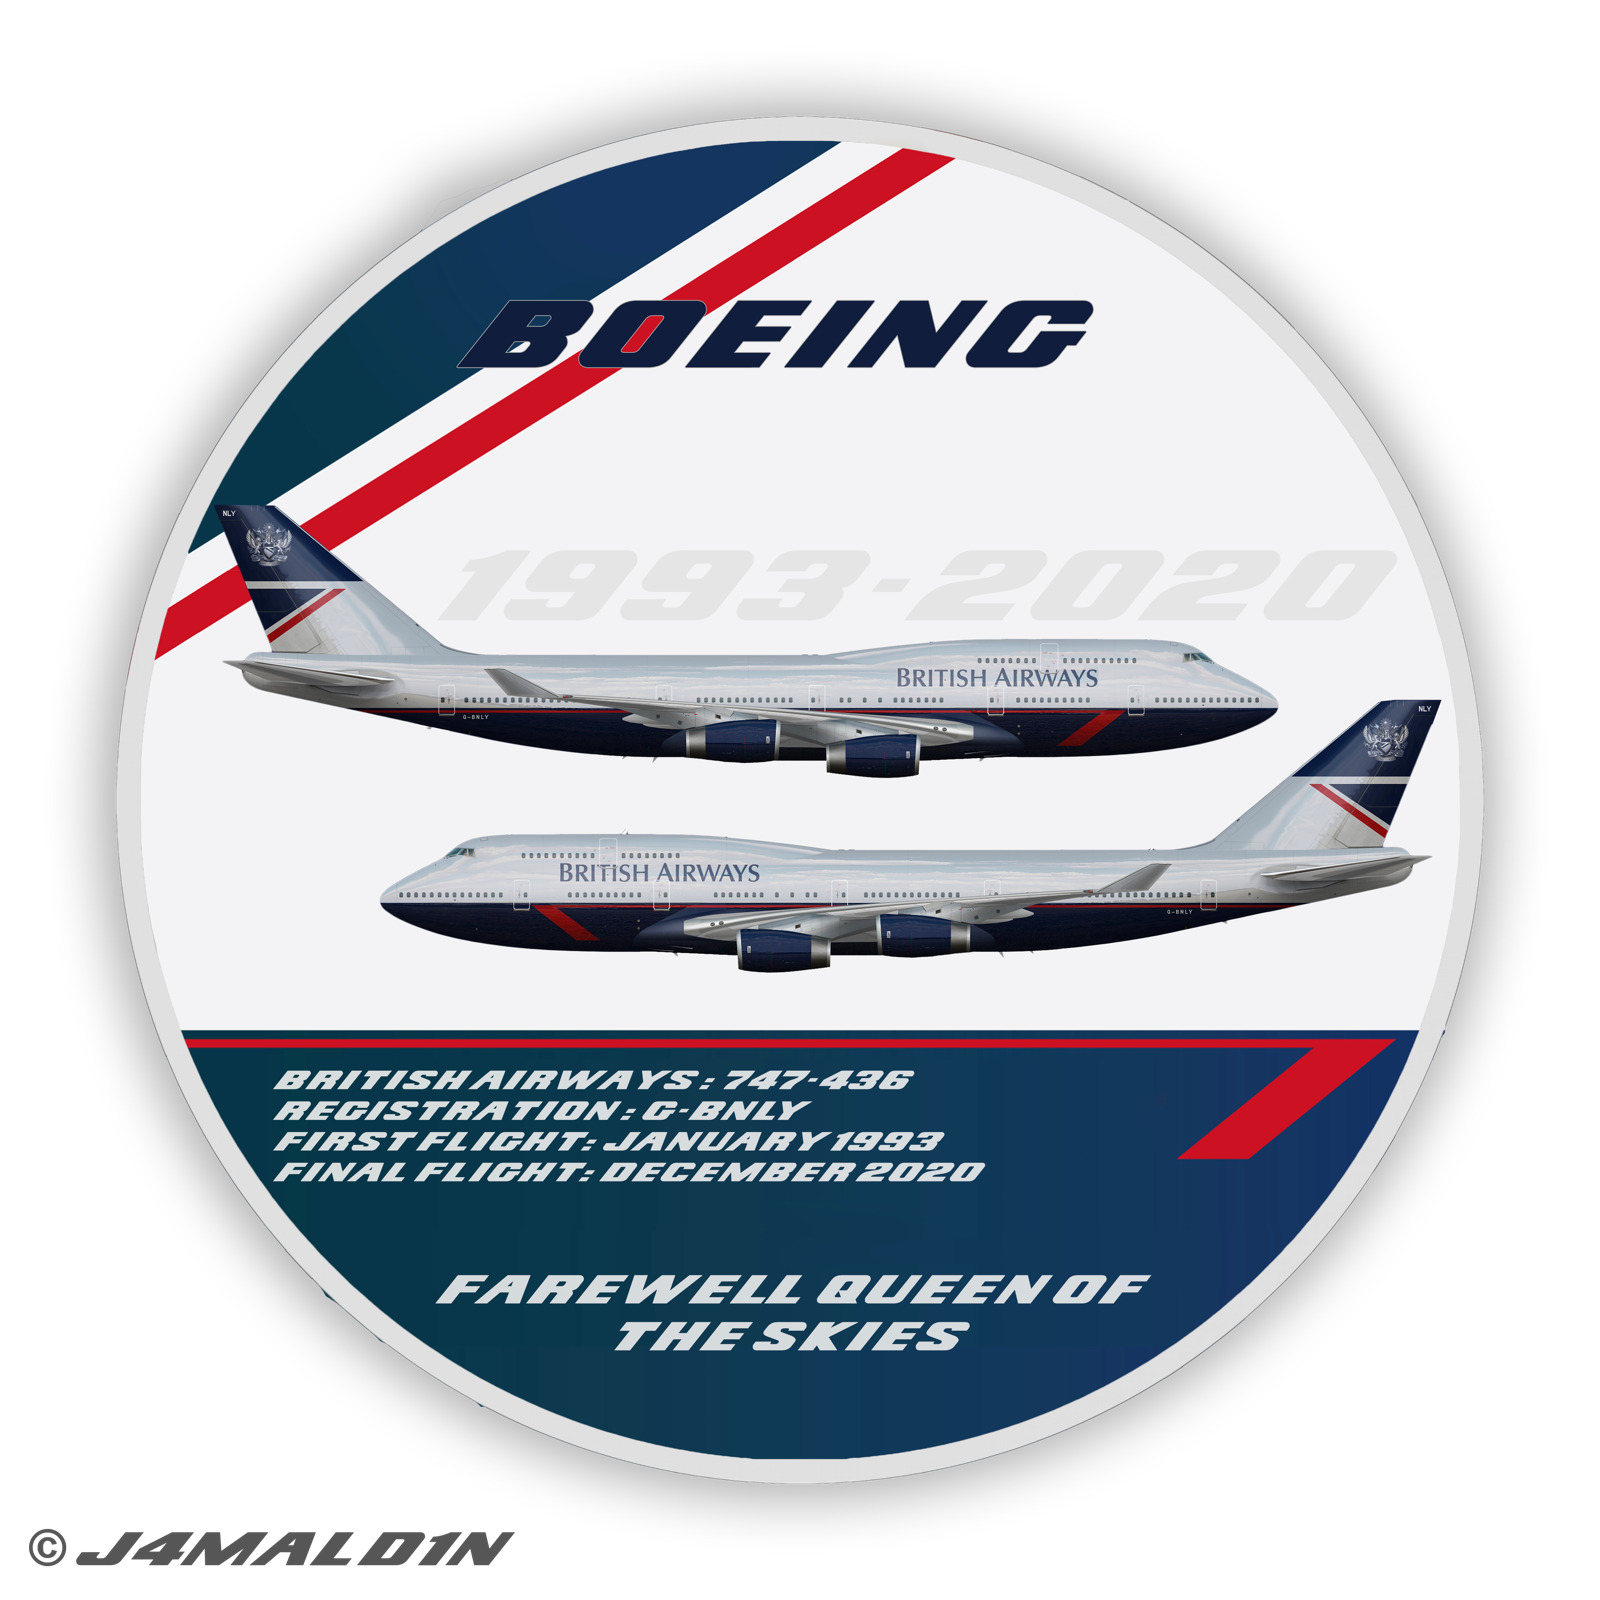 Premium Boeing 747-400 Sticker (Large) - British Airways Landor 